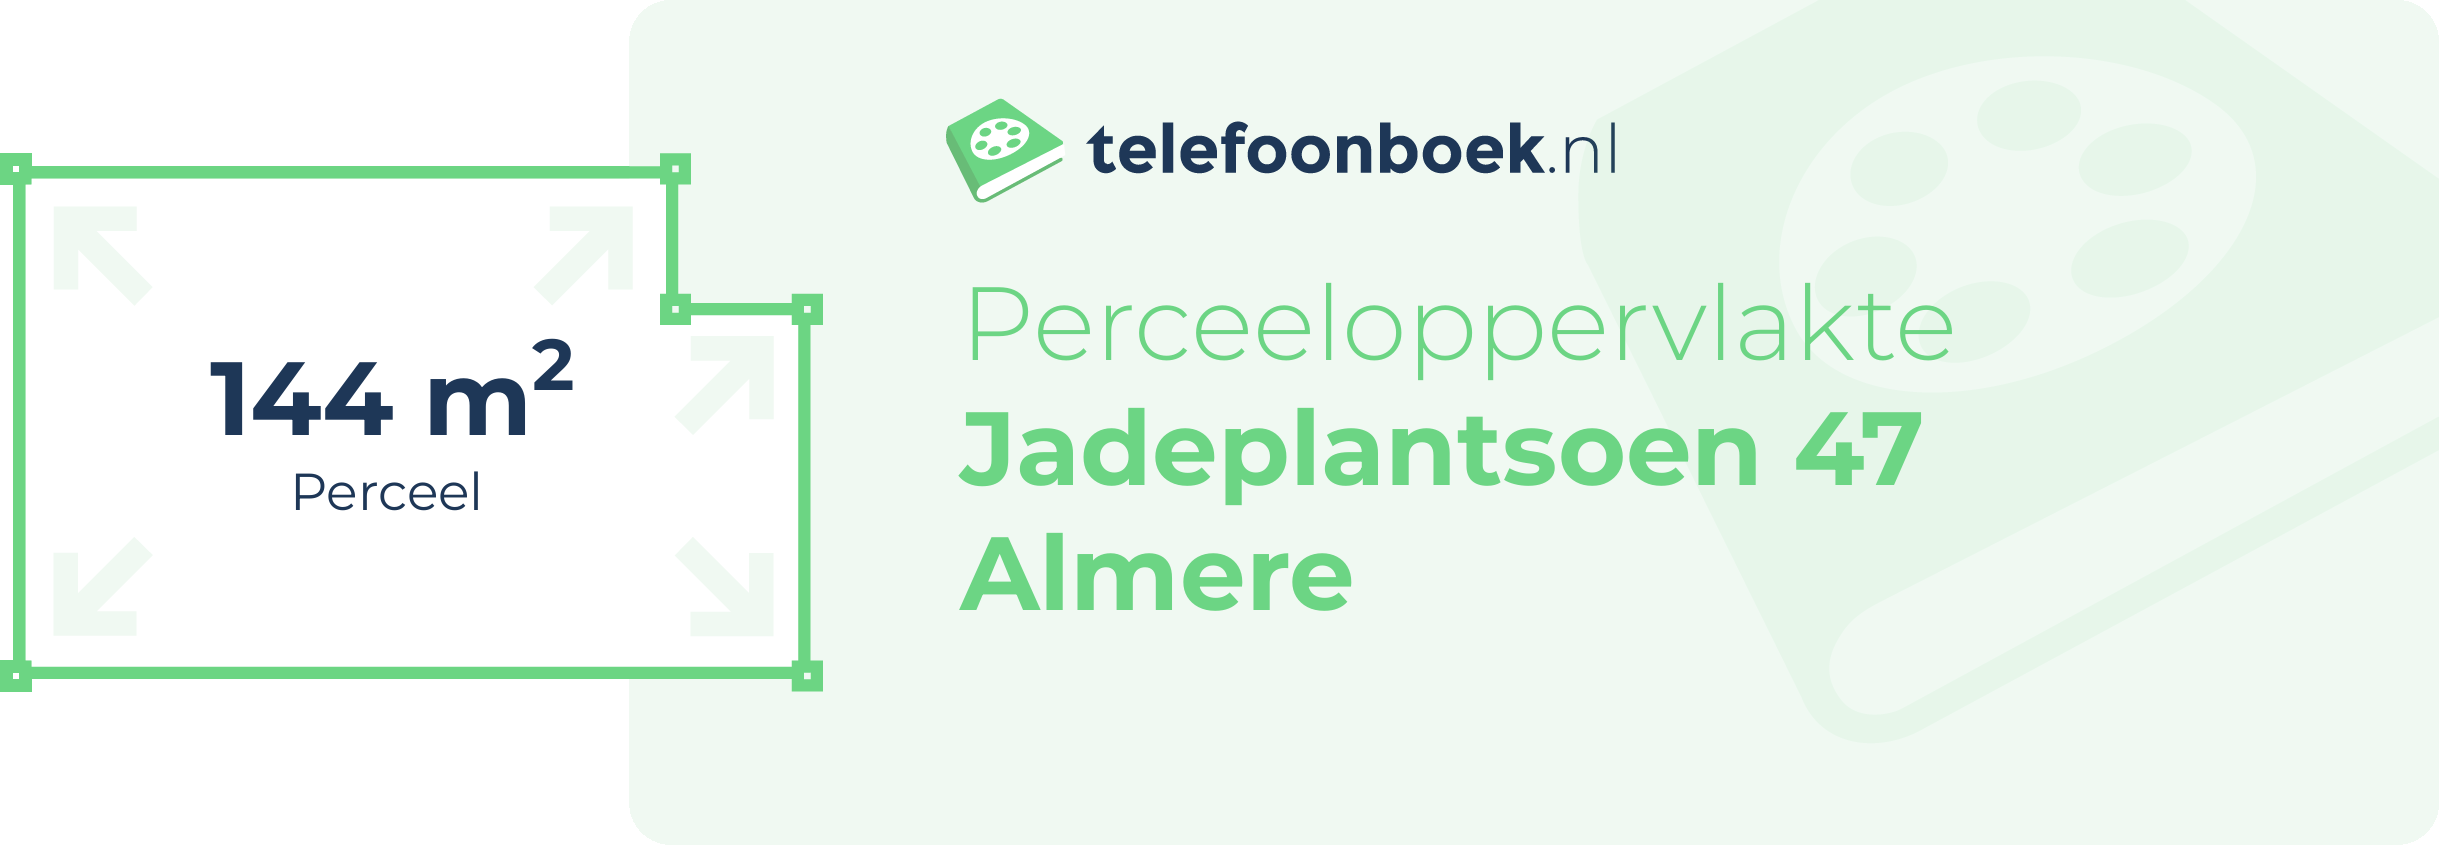 Perceeloppervlakte Jadeplantsoen 47 Almere